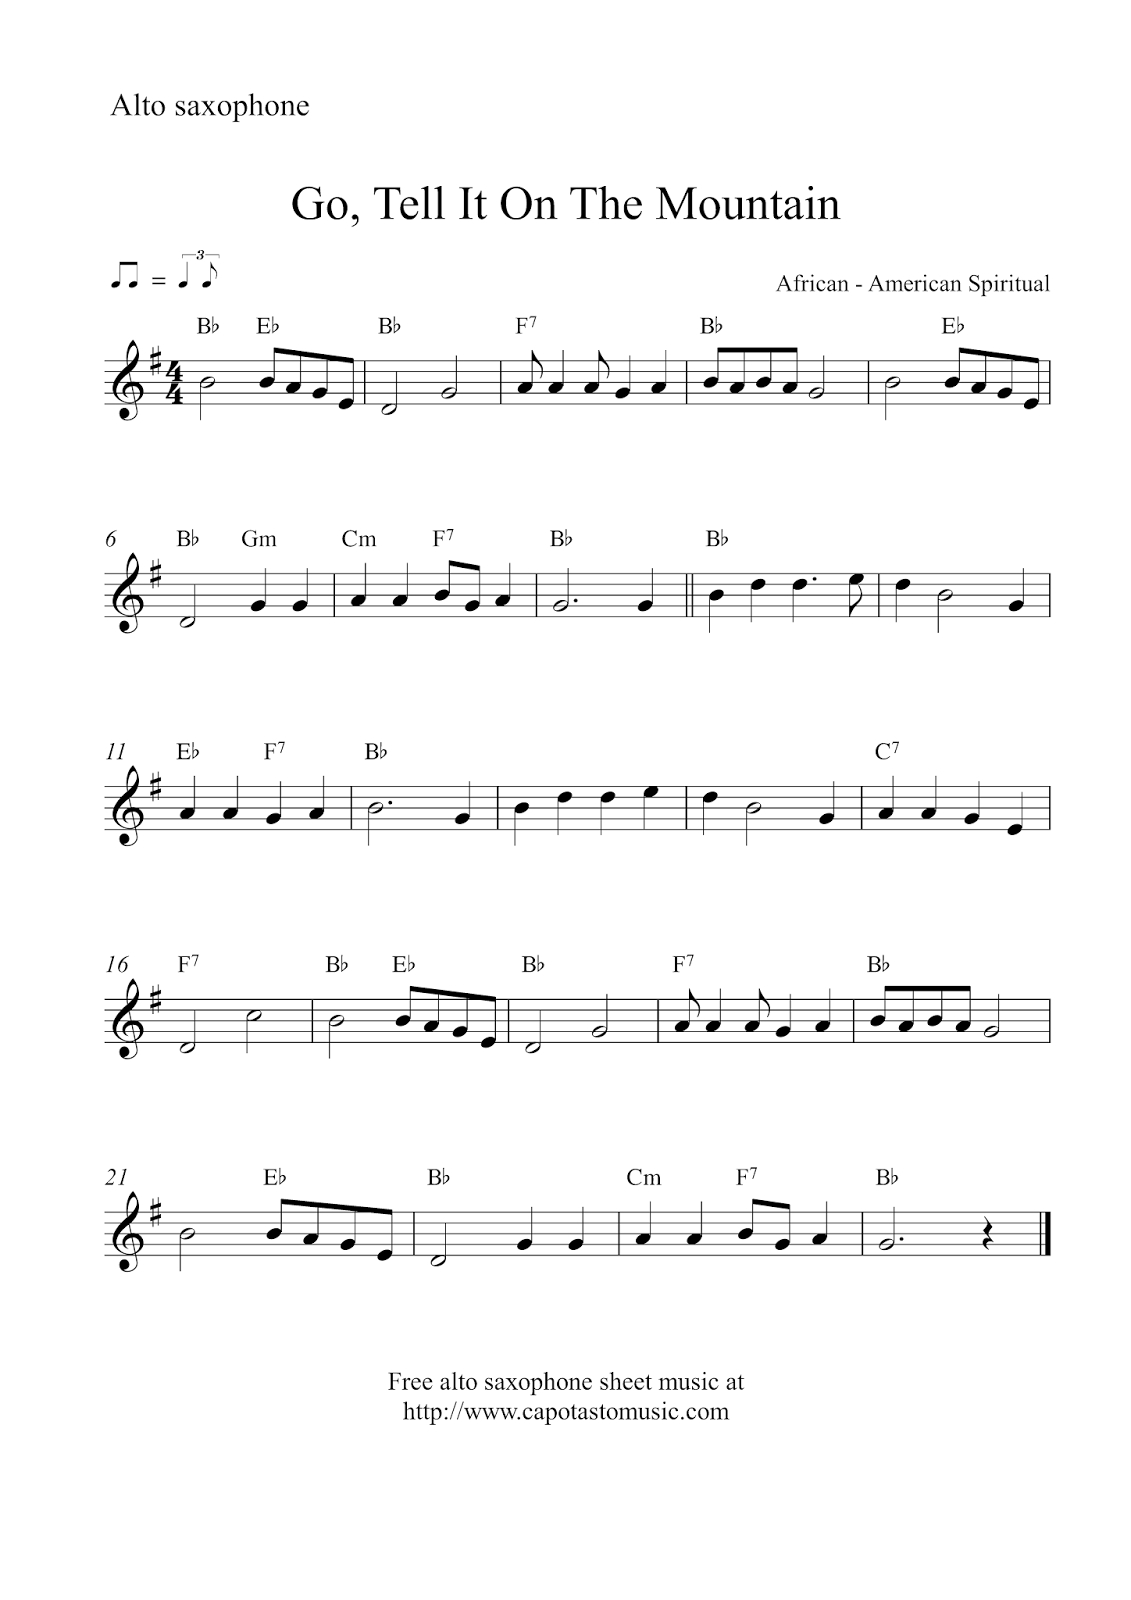 Free Christmas Alto Saxophone Sheet Music - Go, Tell It On The Mountain - Free Printable Christmas Sheet Music For Alto Saxophone